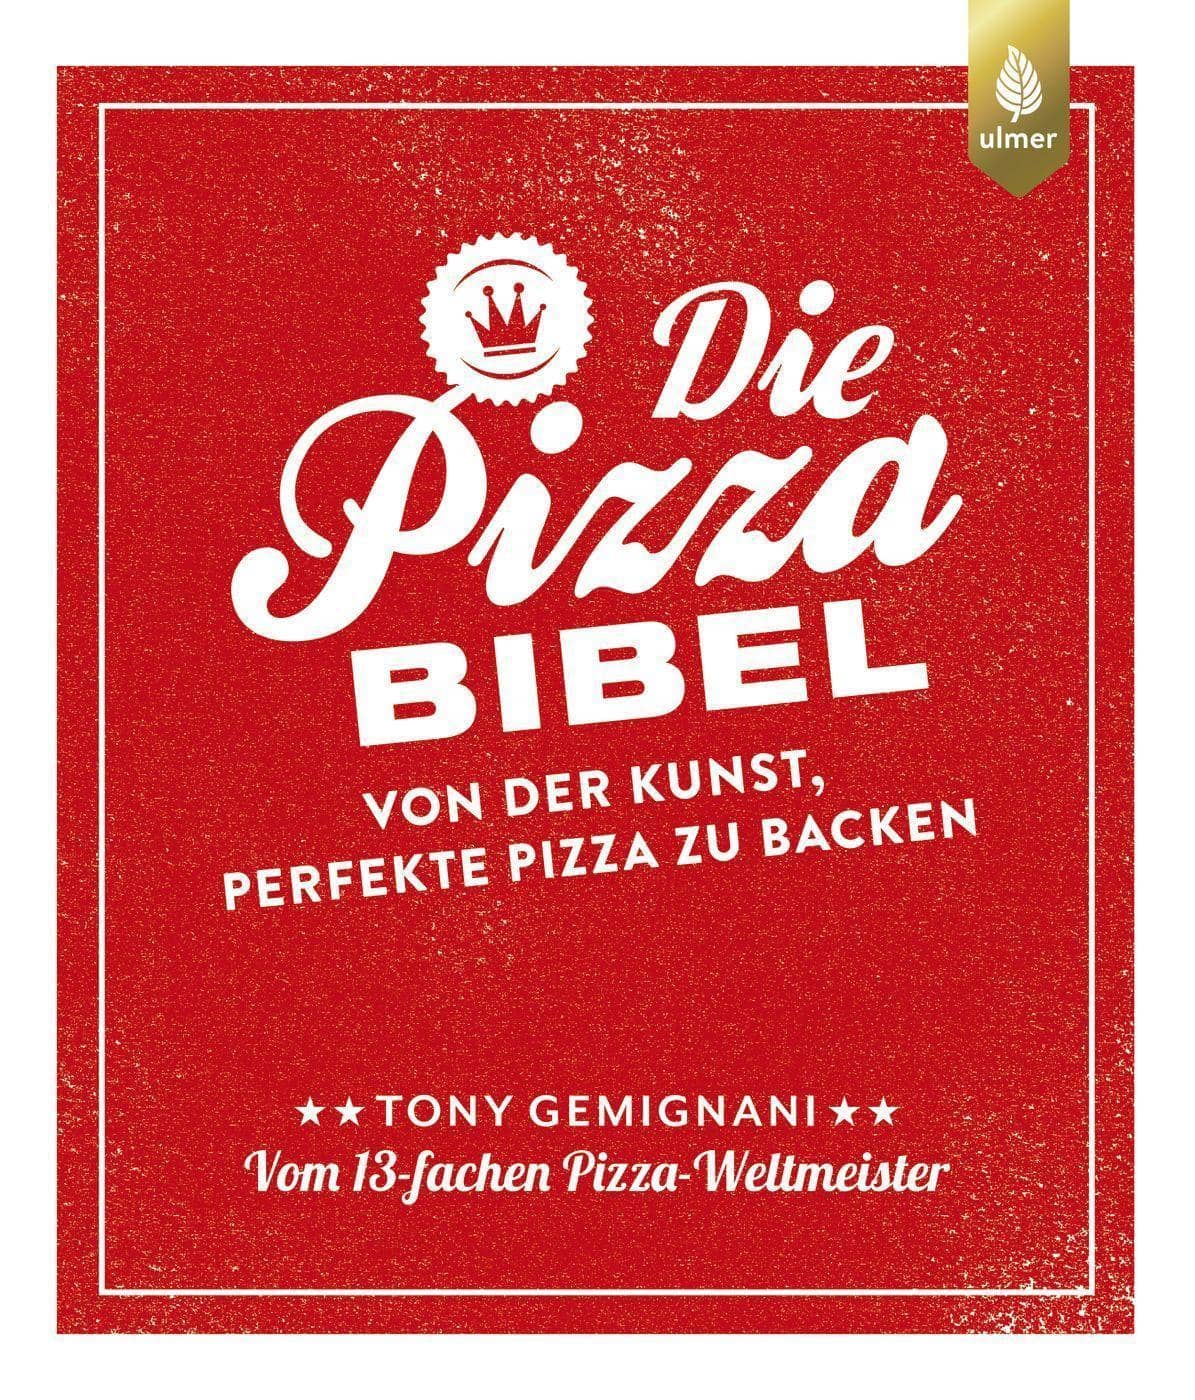 Die Pizza Bibel - 320 Seiten tolle Pizzarezepte  vom Pizza-Weltmeister Tony Gemignani